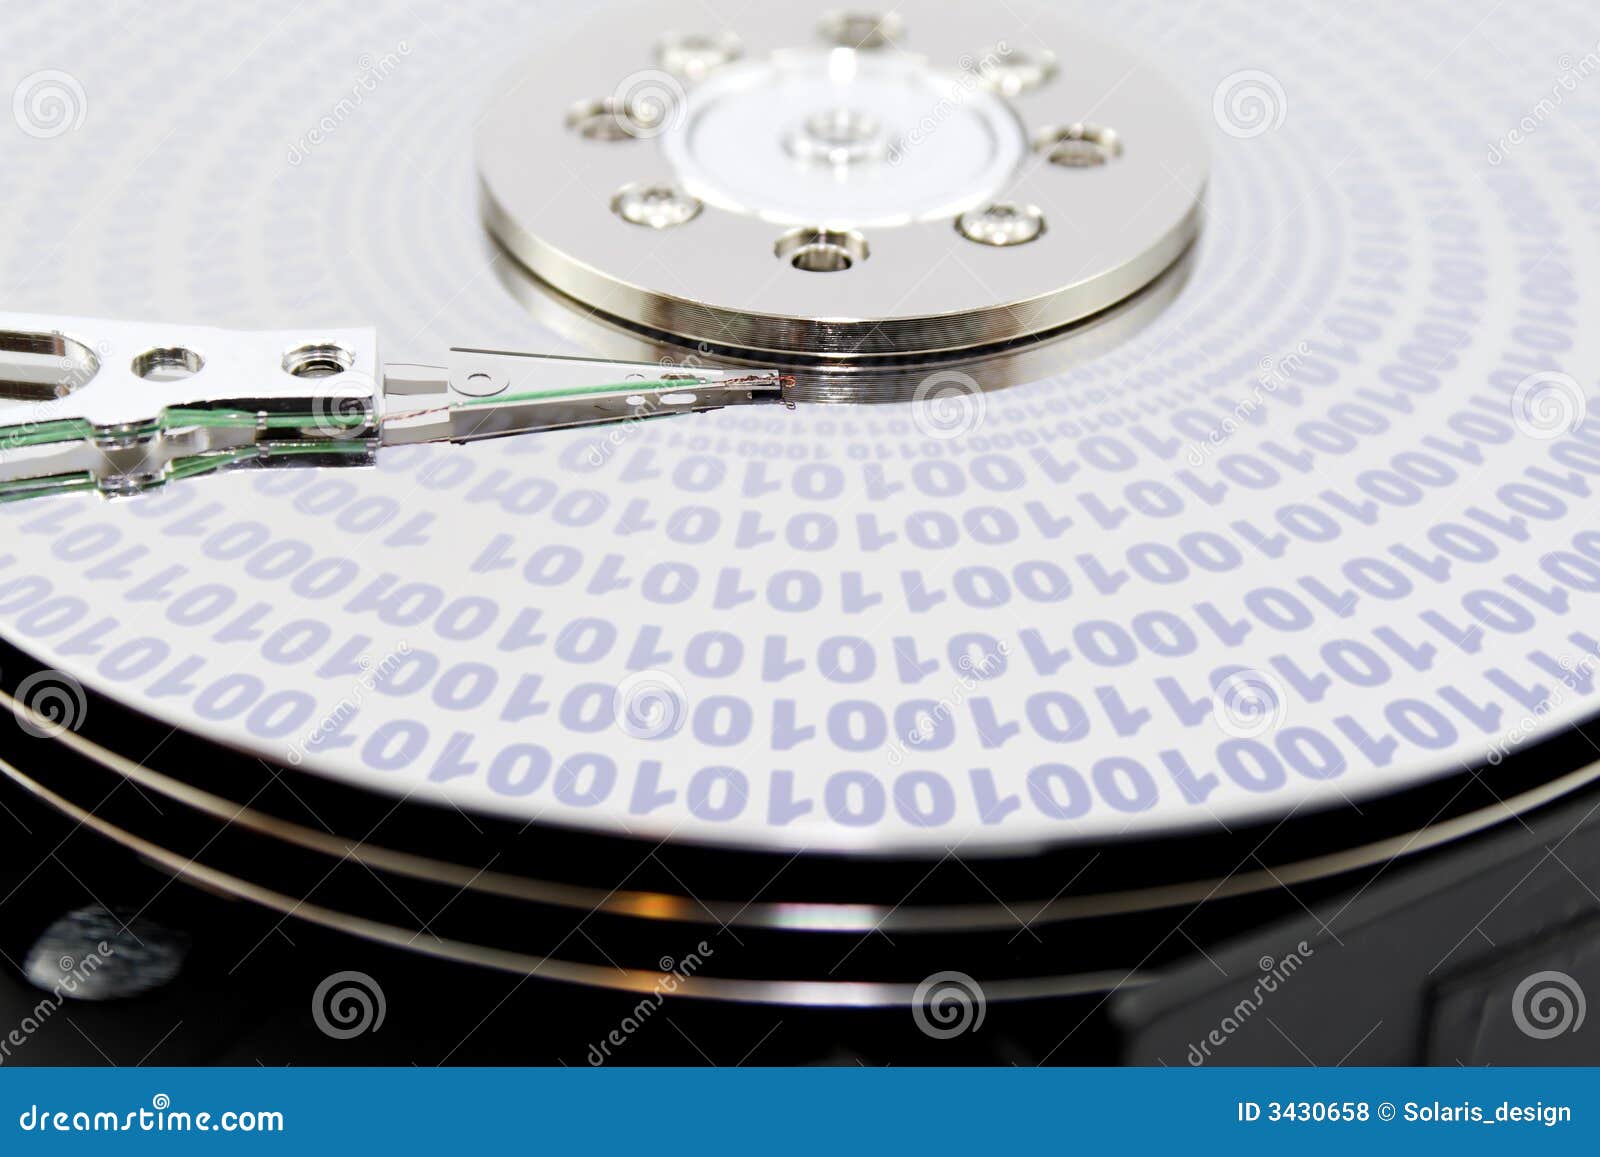 hard disk binary